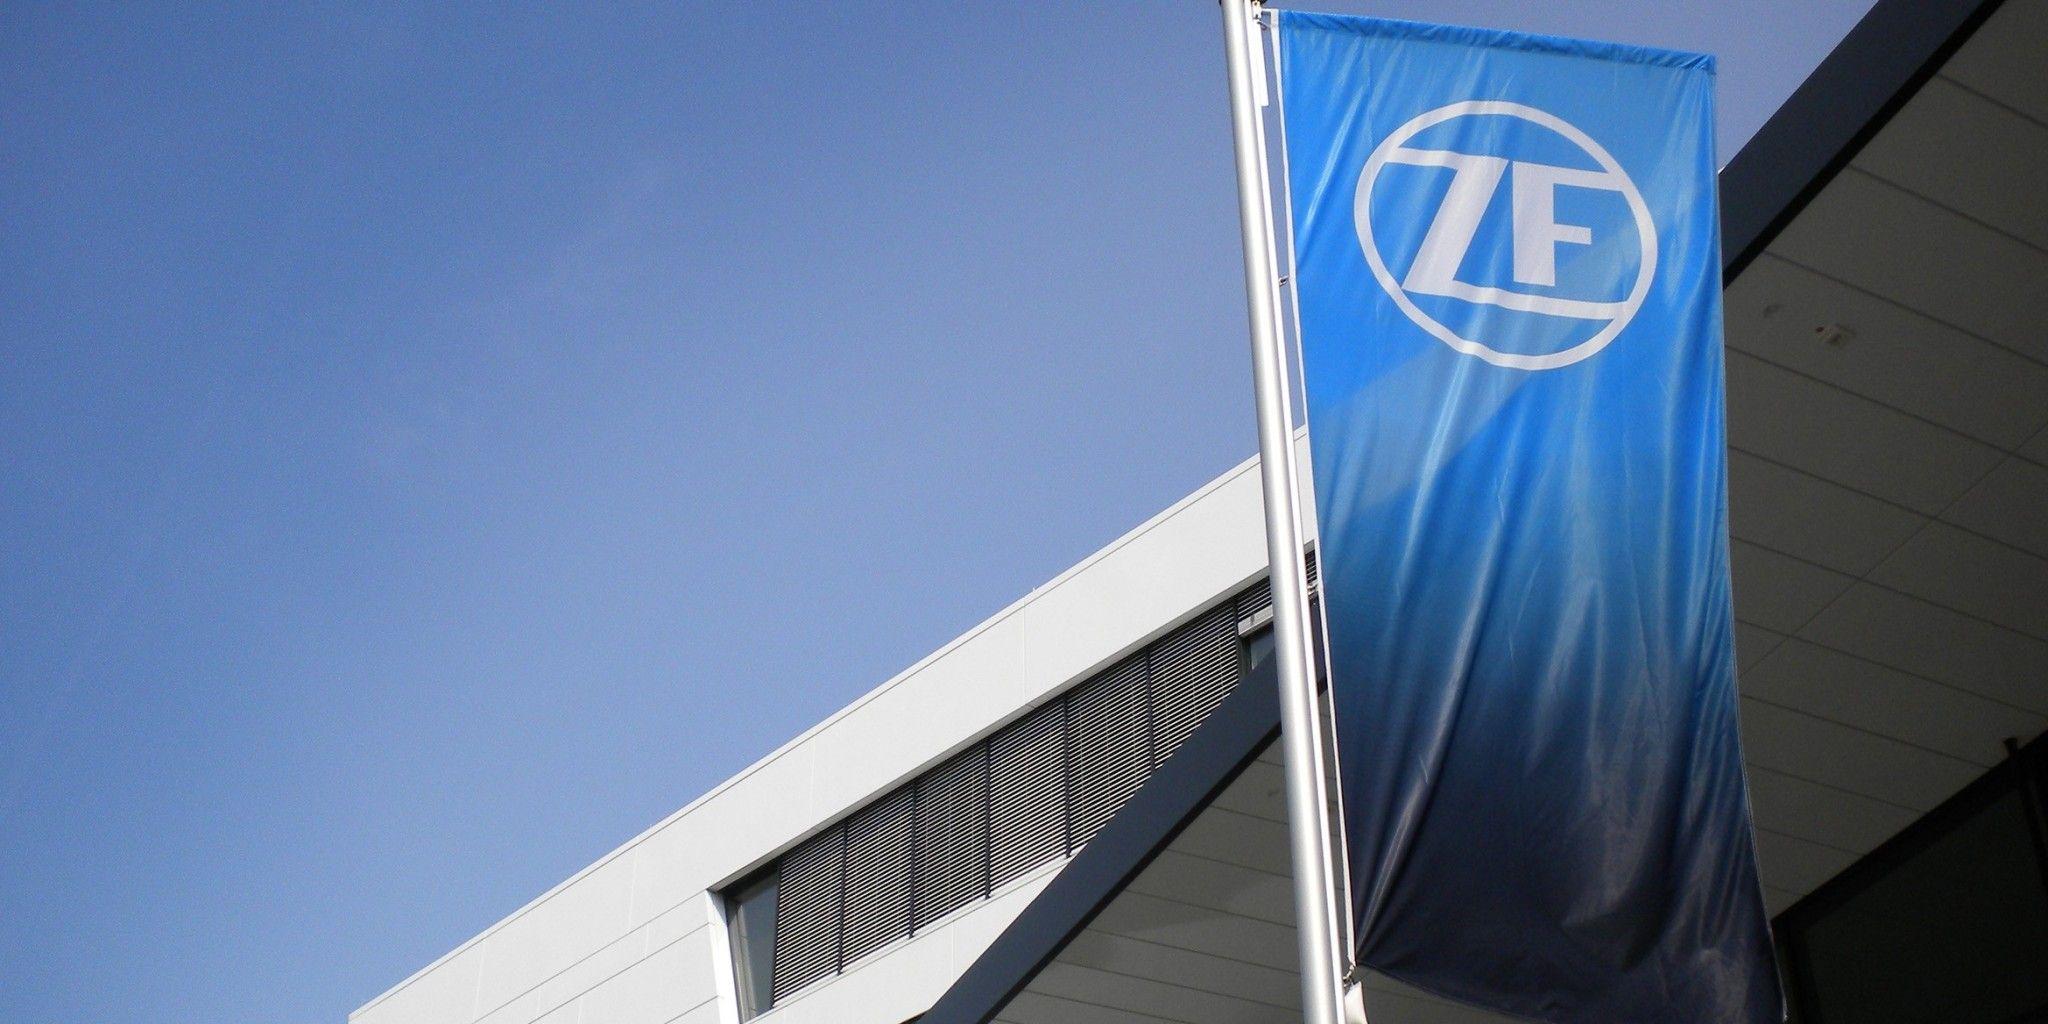 ZF Automotive Logo - The ZF Company